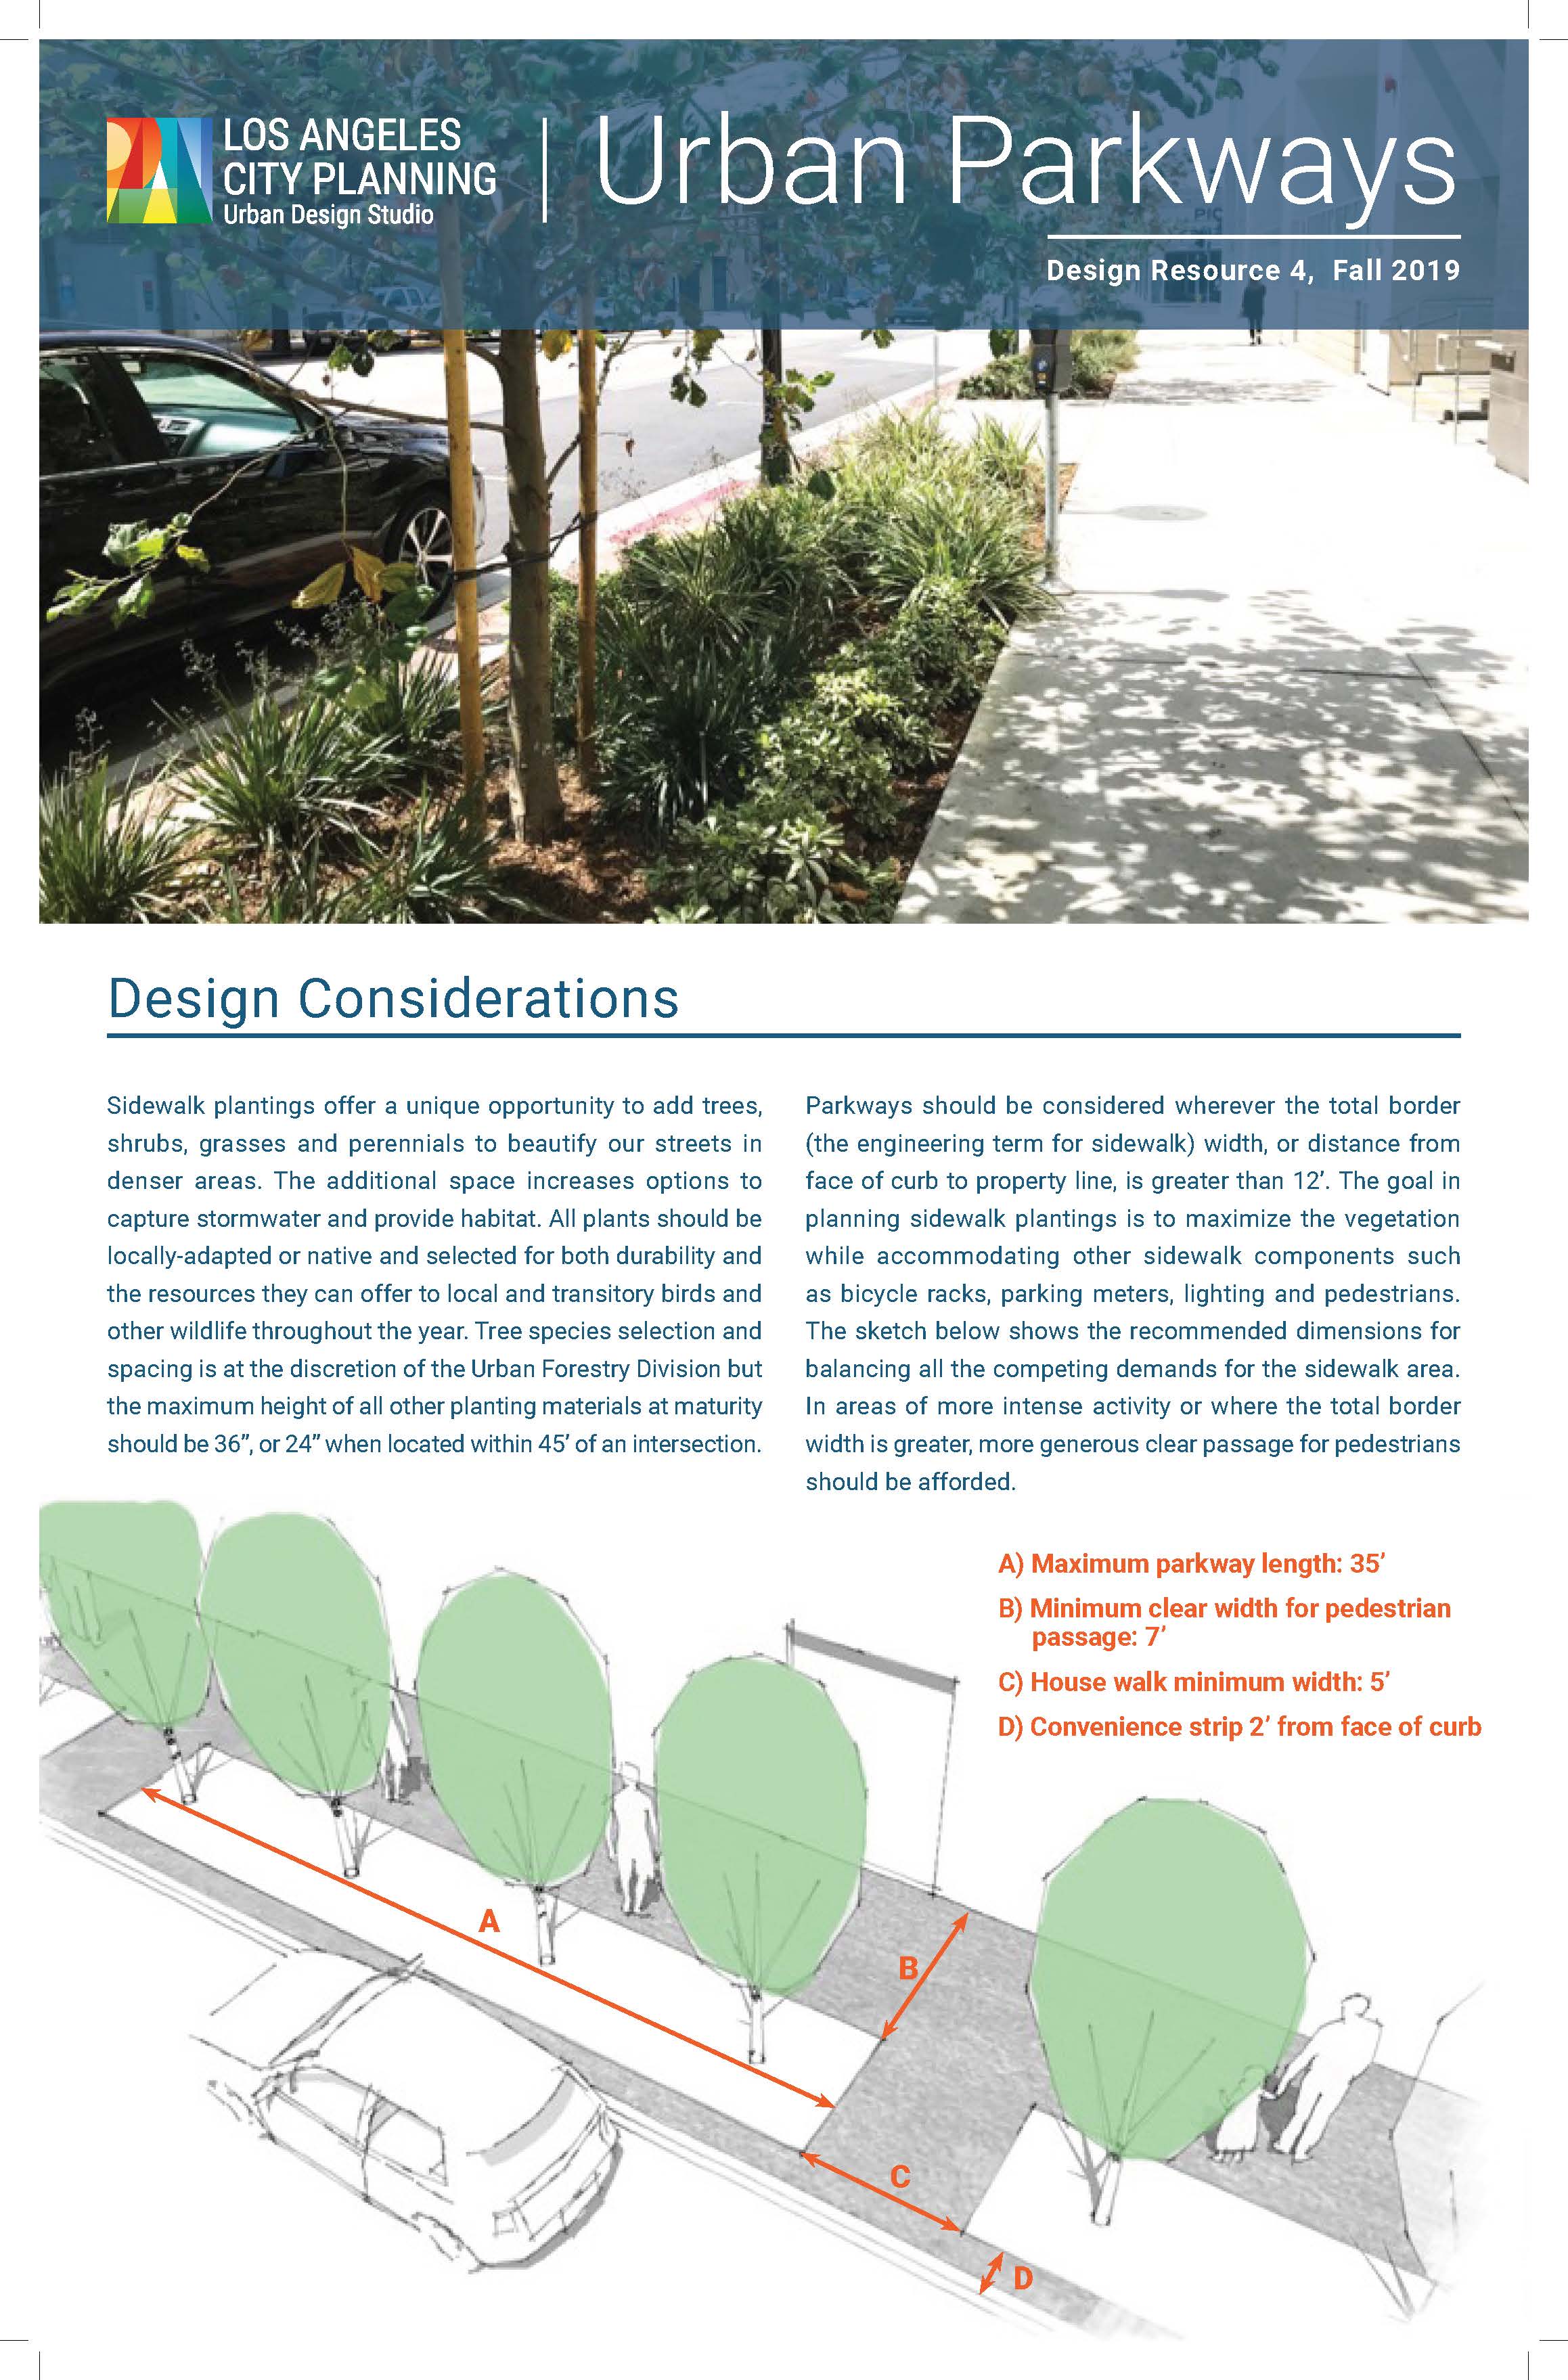 Design Resource 4: Urban Parkways